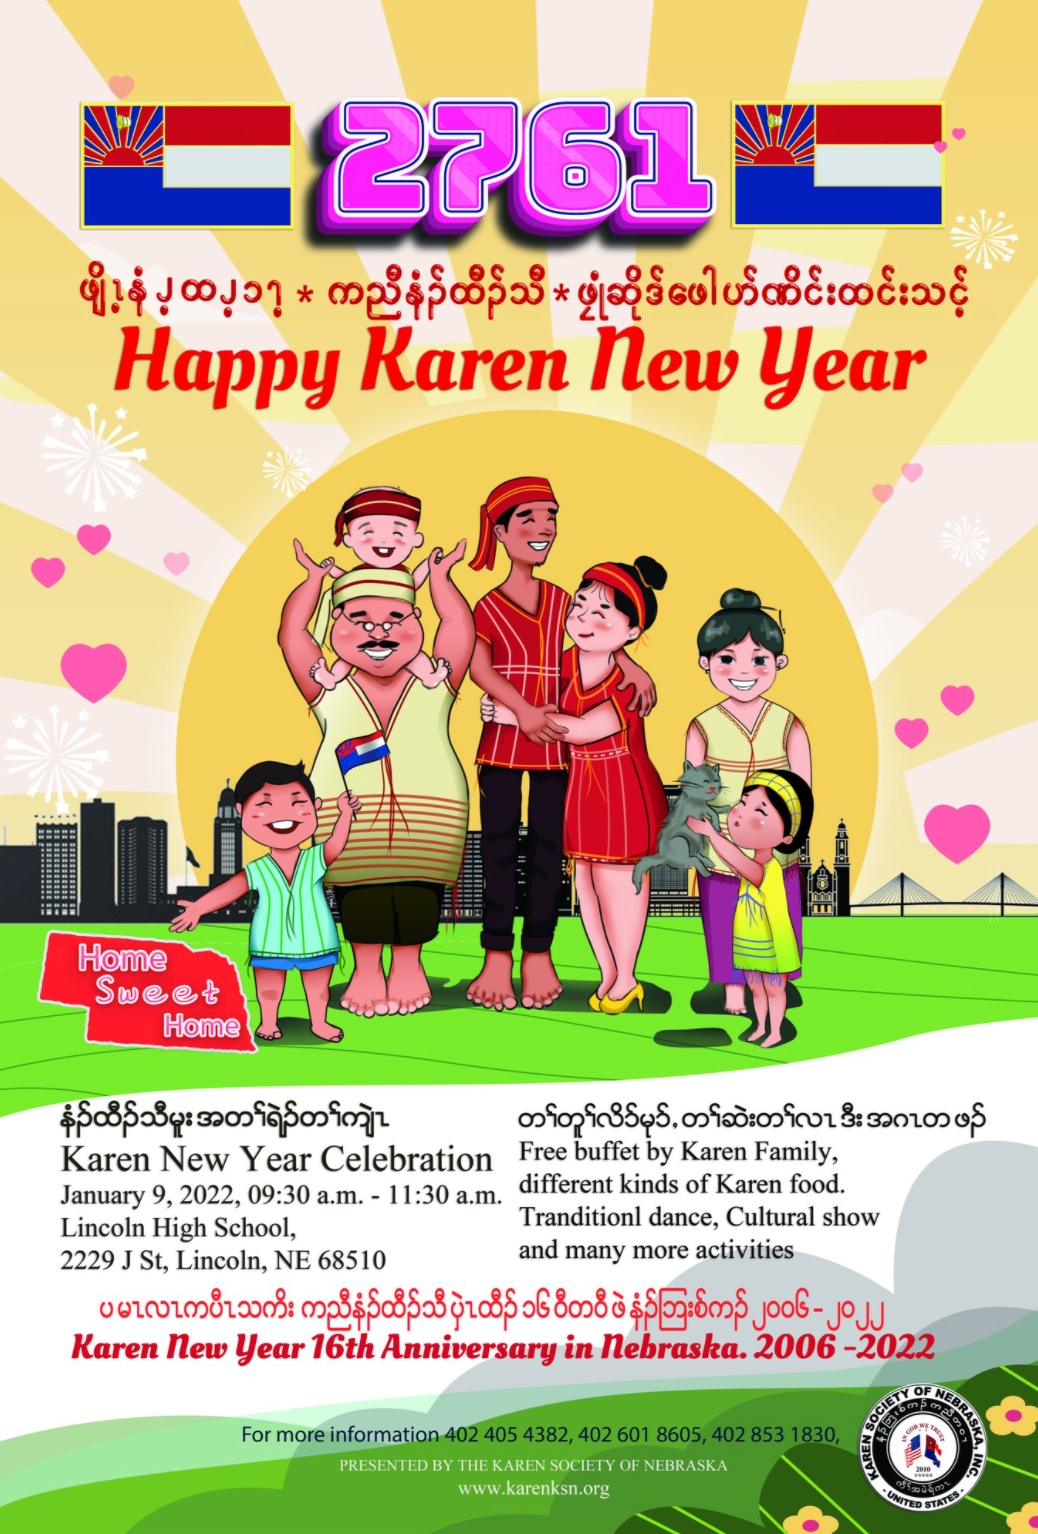 2761 Karen New Year Event Announce University of NebraskaLincoln